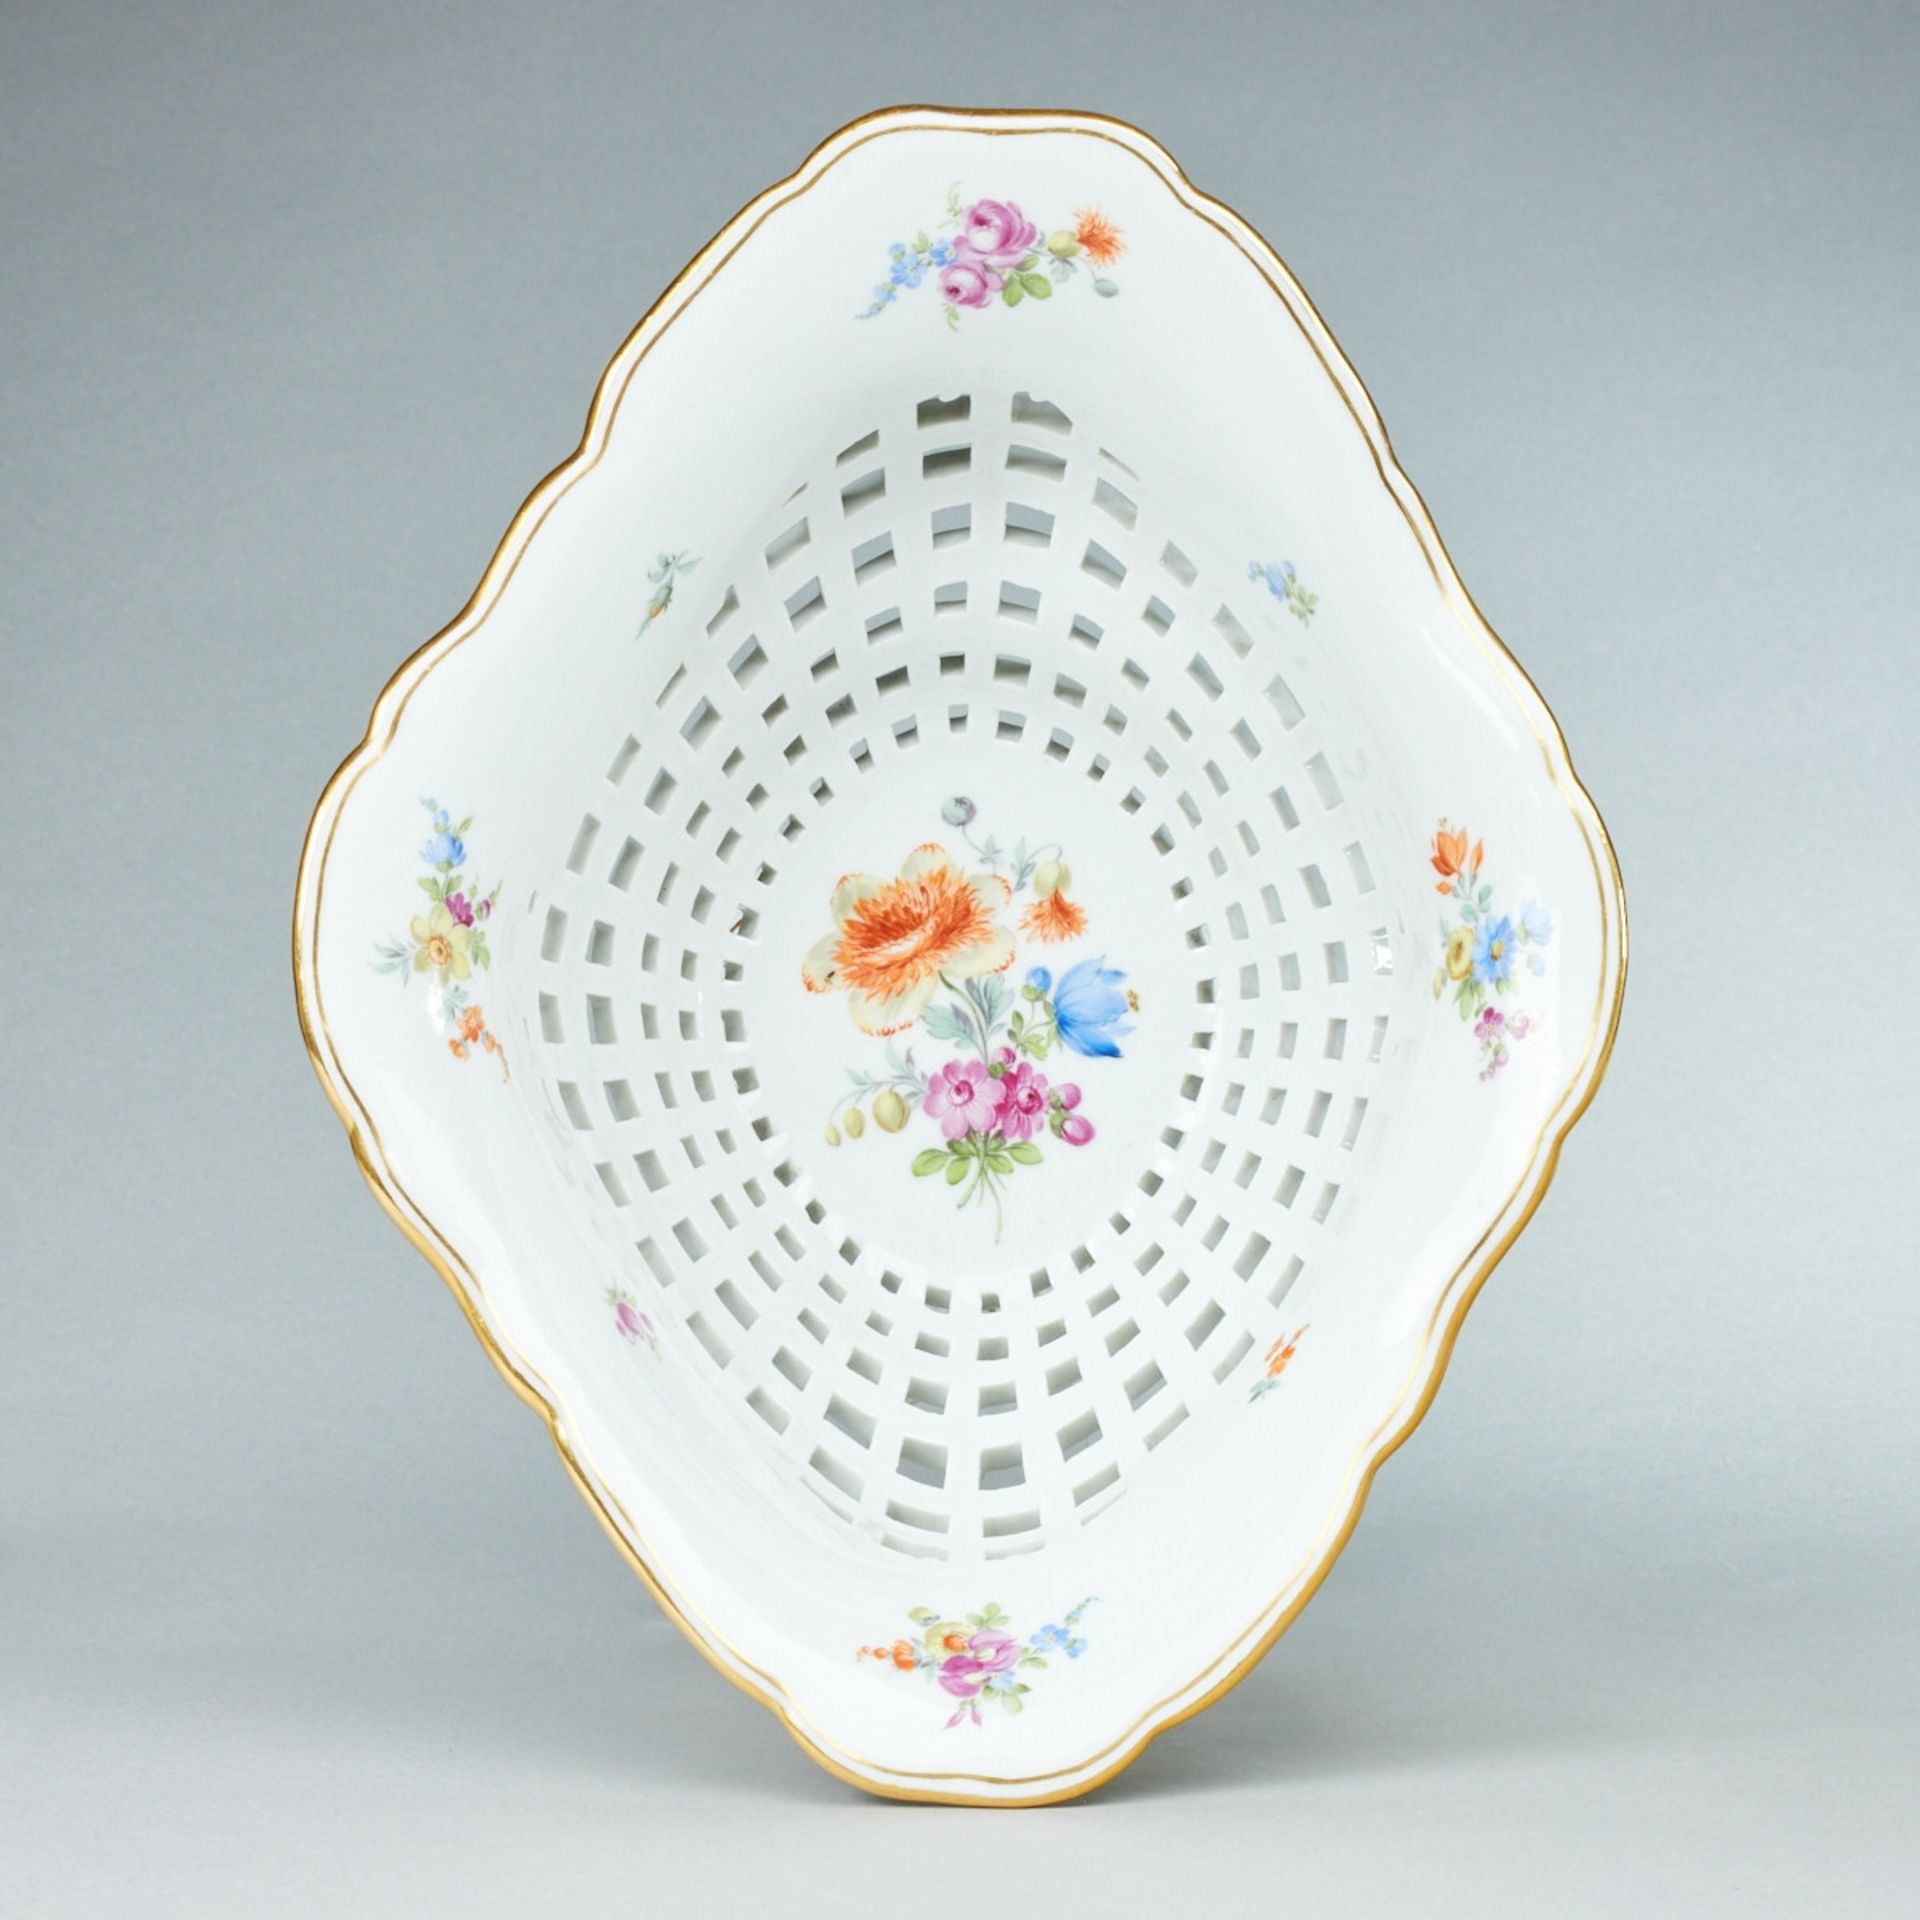 Ovale Tazza - Blumenbukett. Meissen 1850-1924. - Bild 2 aus 2